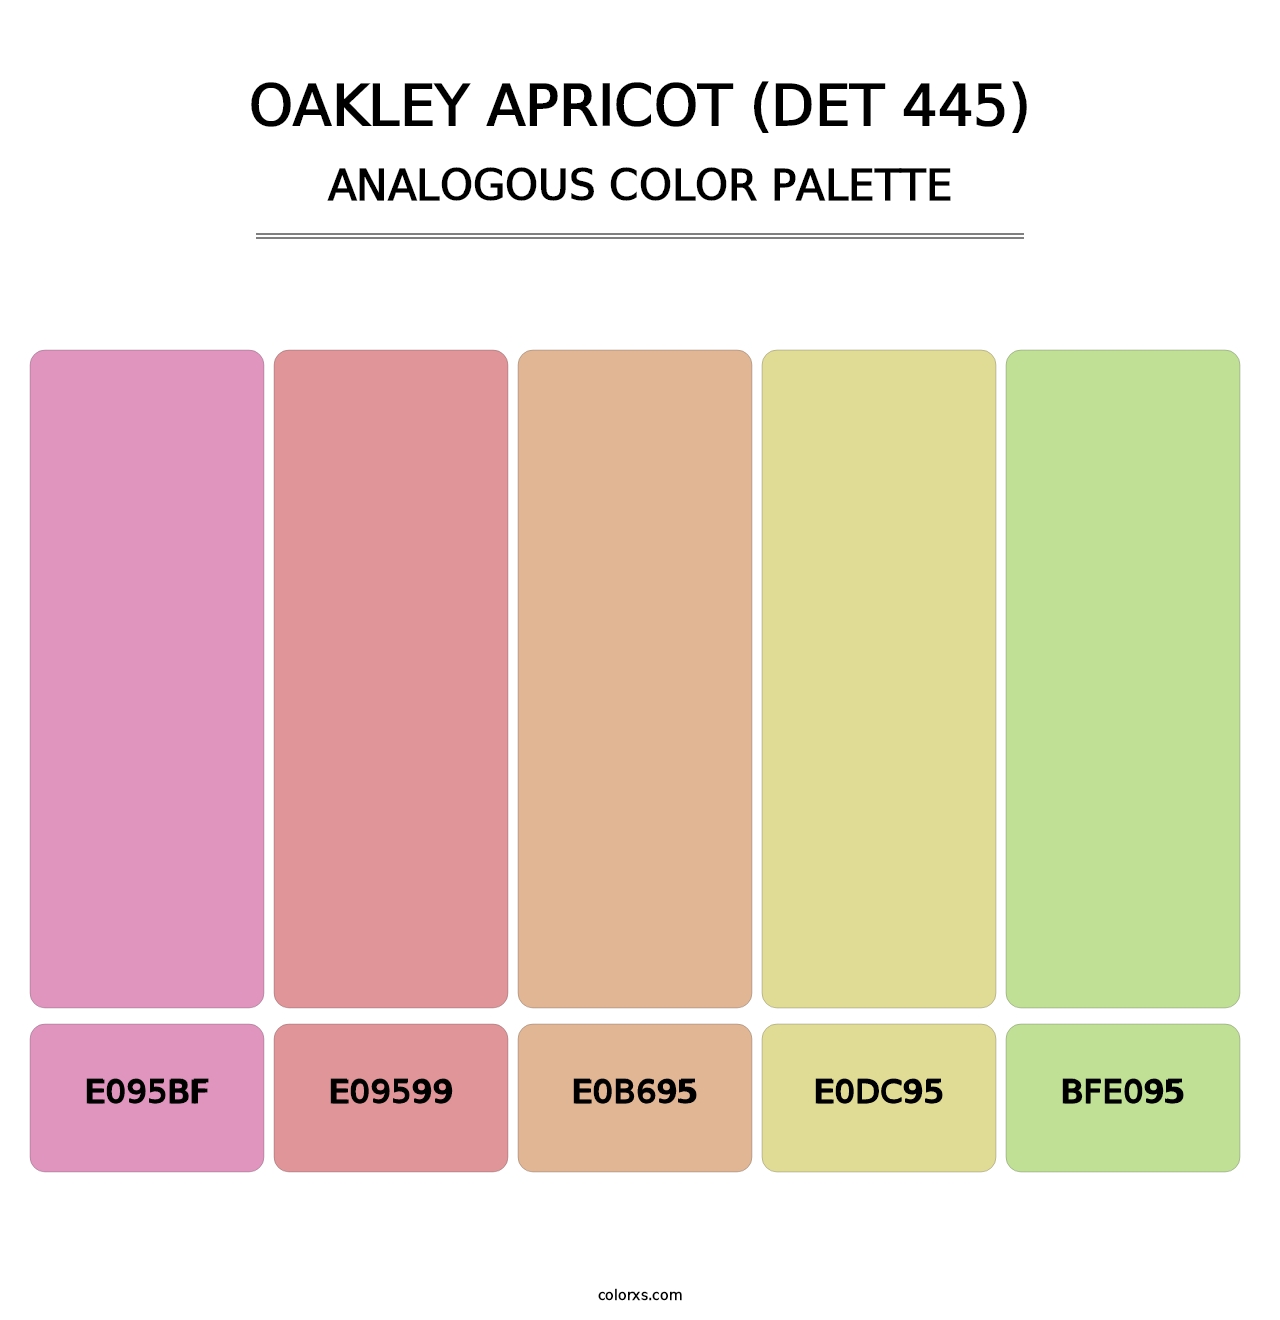 Oakley Apricot (DET 445) - Analogous Color Palette